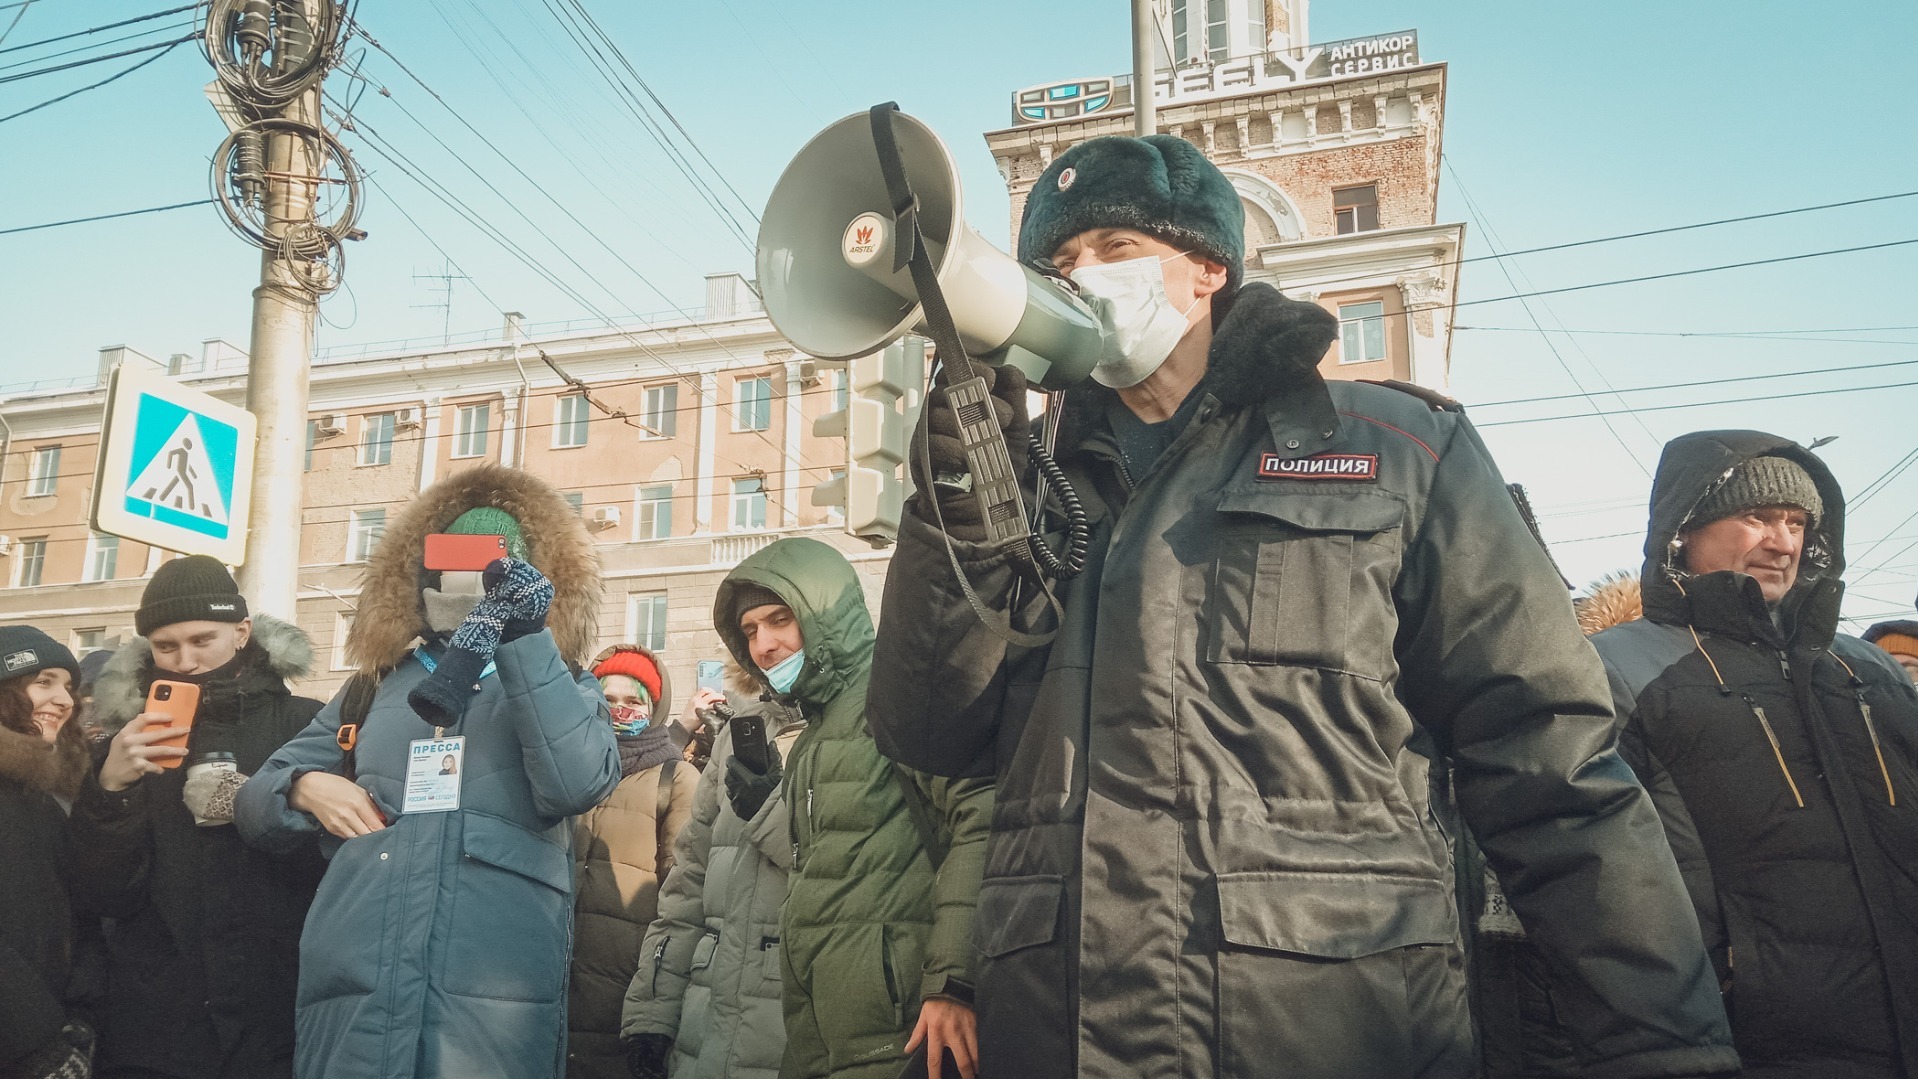 ОМОНовцы гнались за подростком на Lada в Цыганском поселке Екатеринбурга